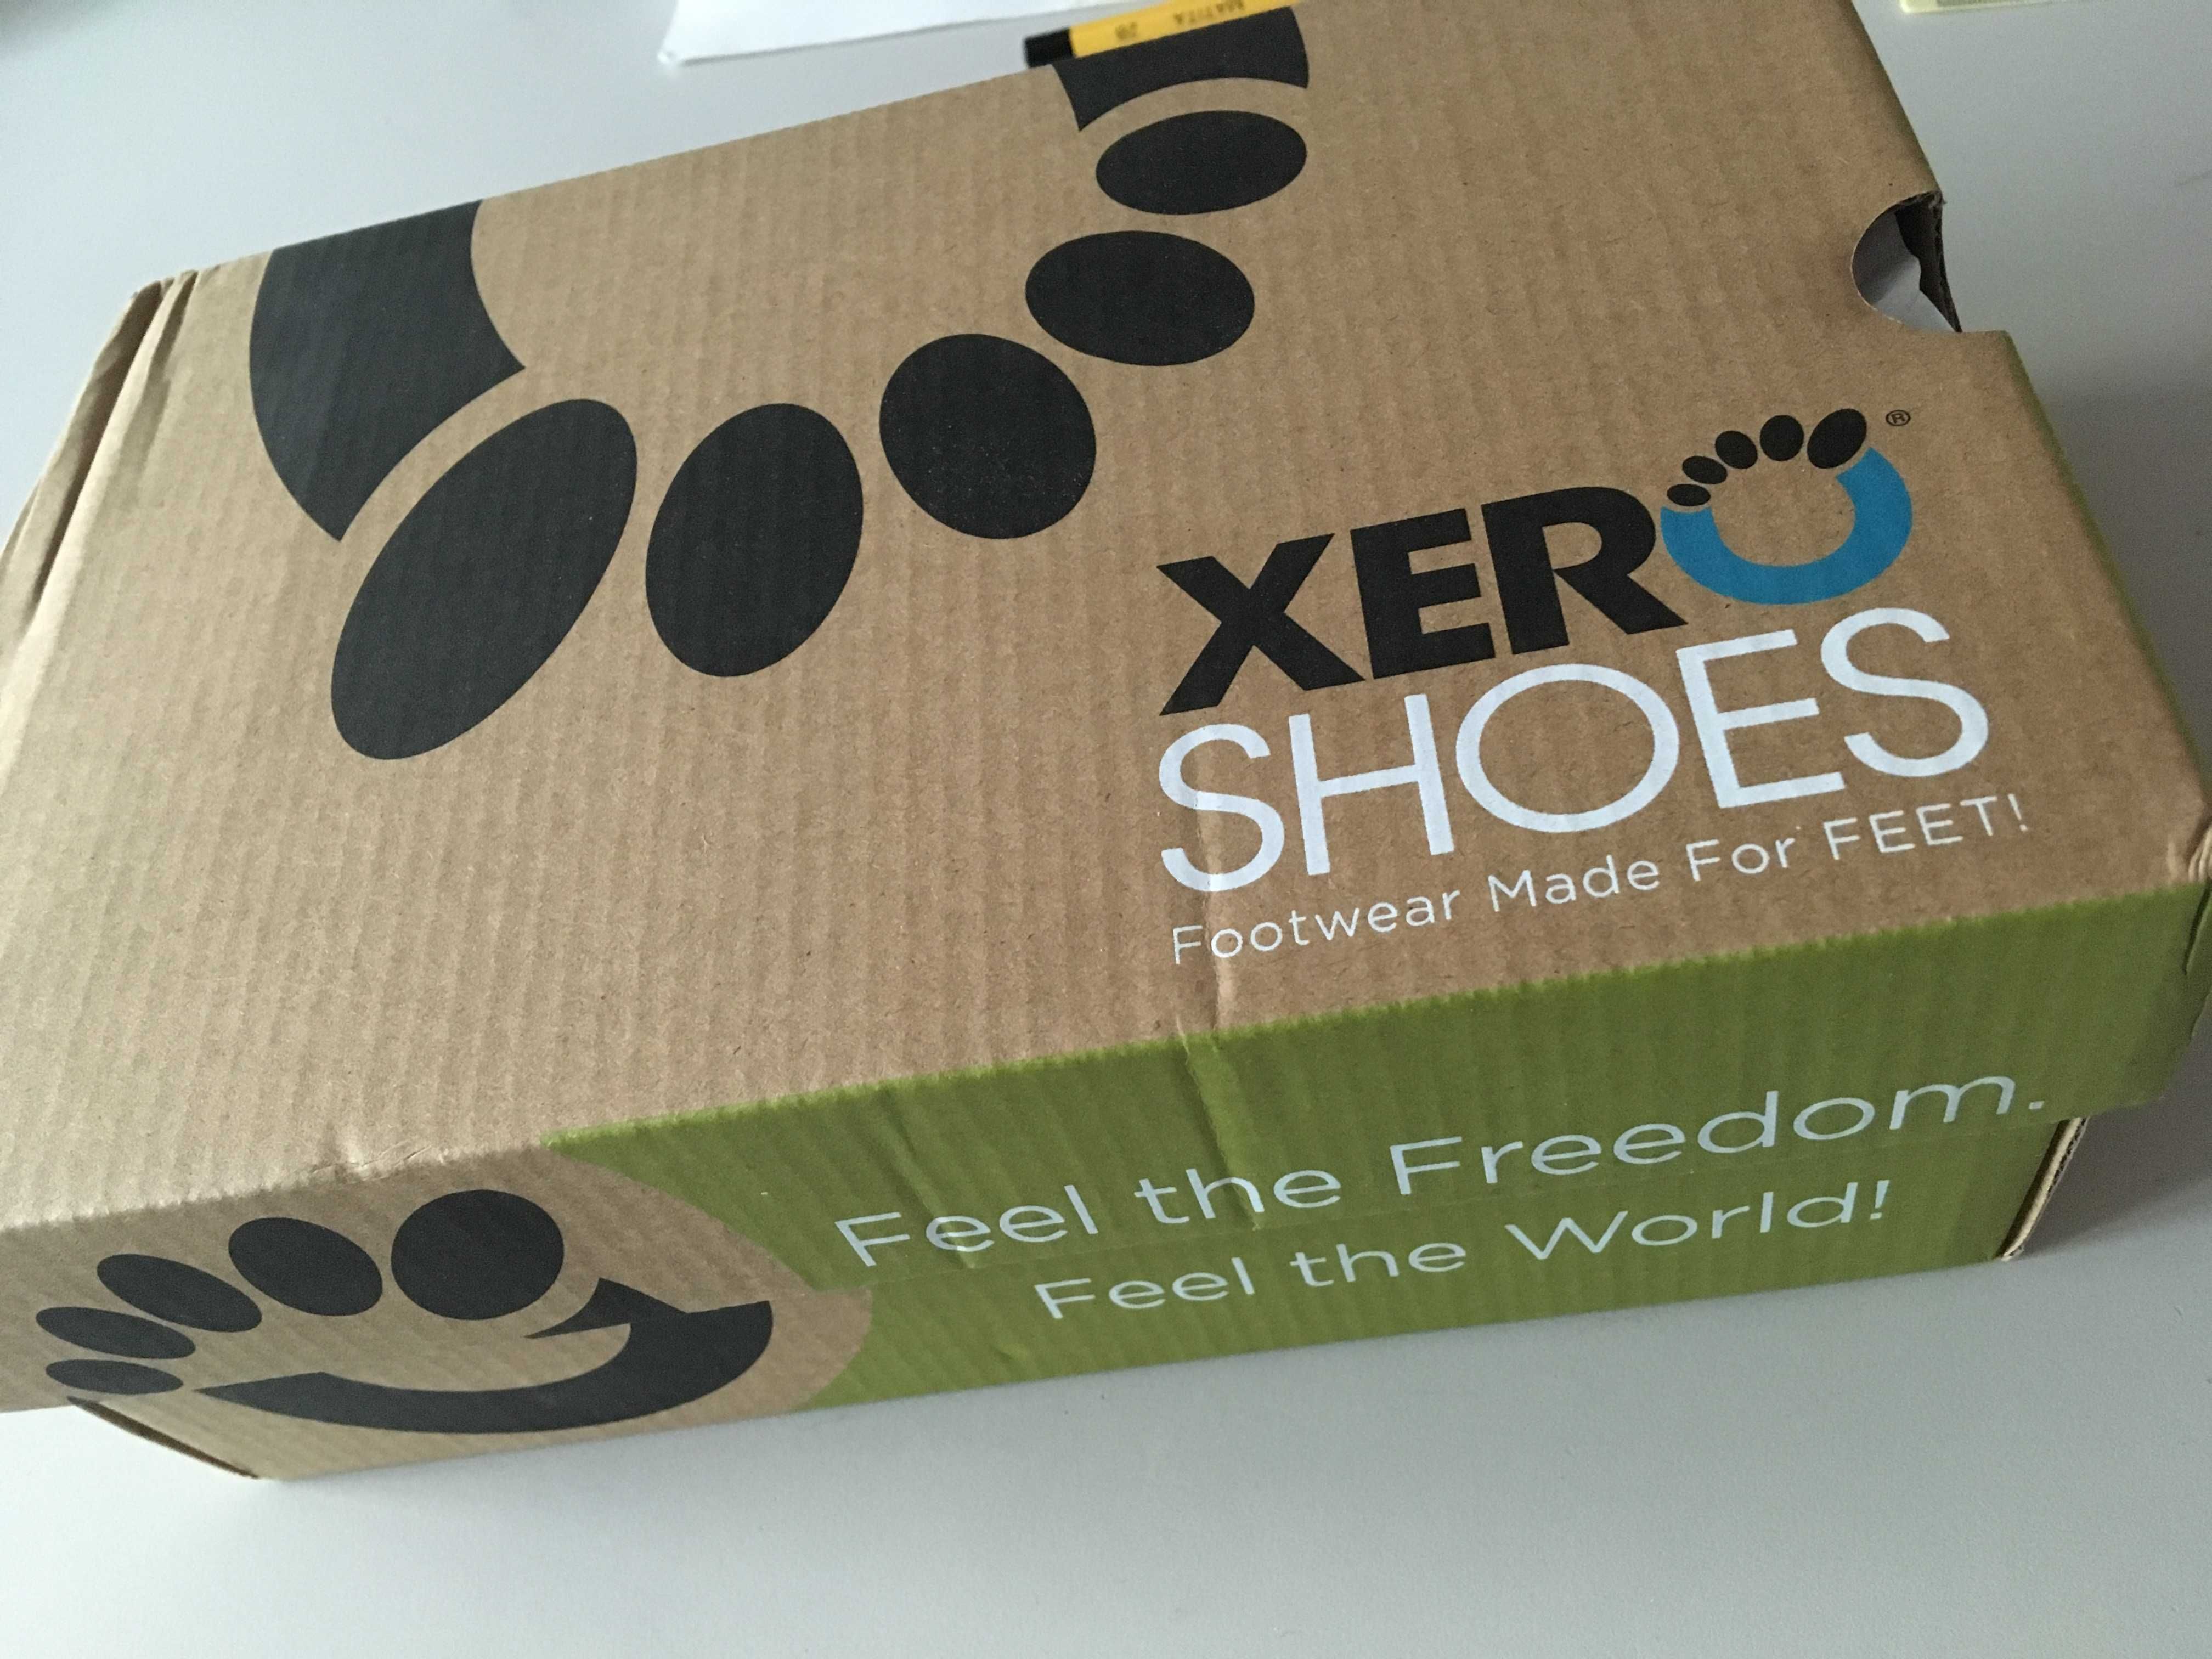 Детски платнени боси обувки Xero,  34-35 номер